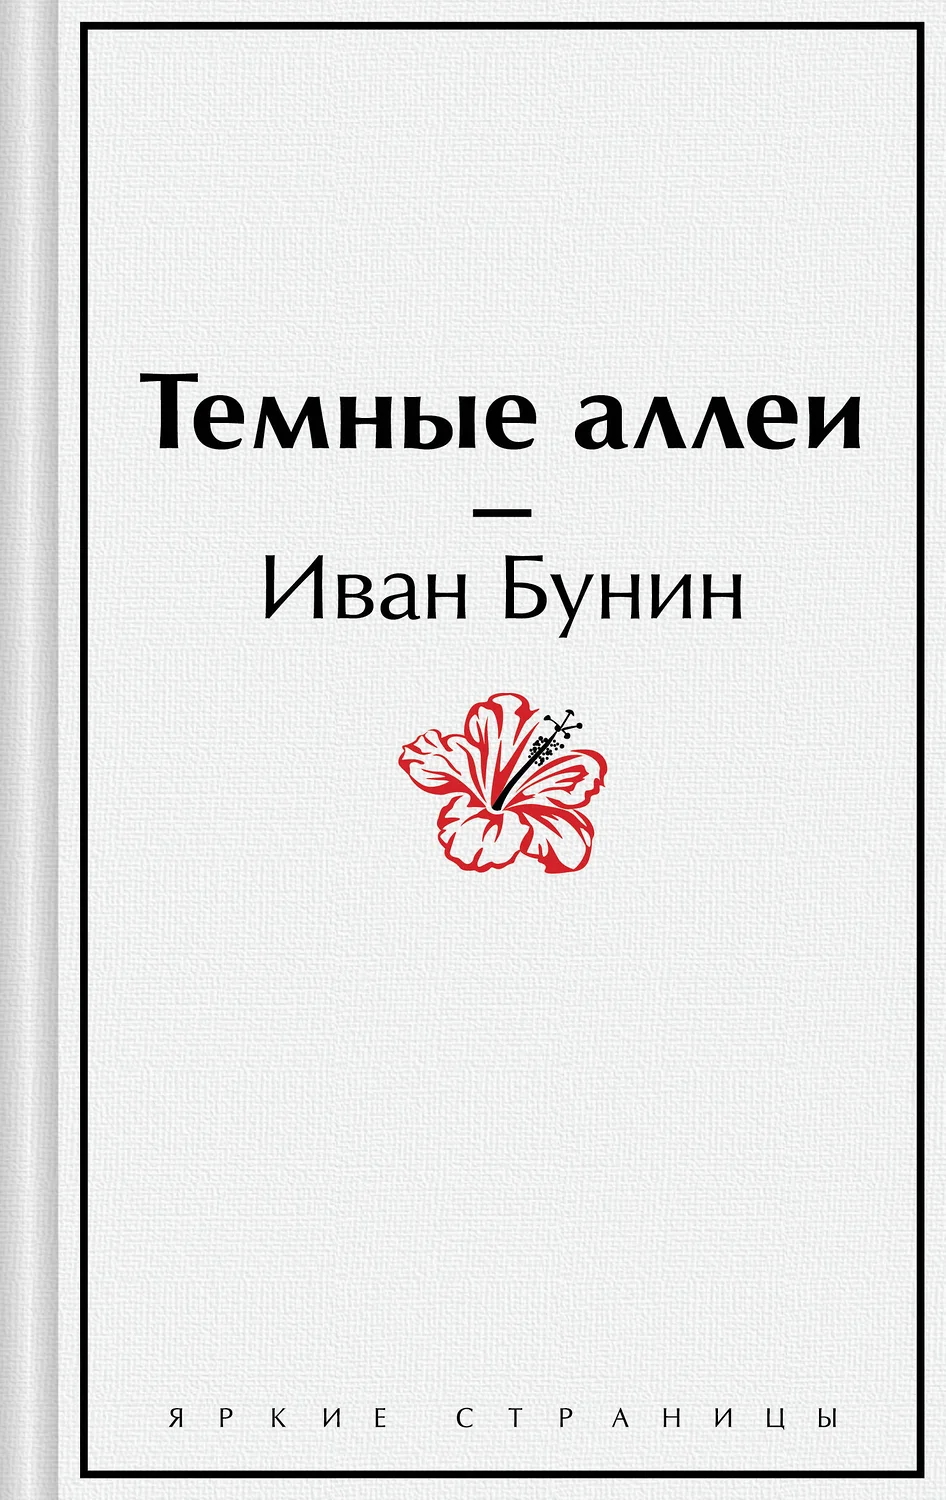 Темные аллеи Книга Бунин Иван 16+